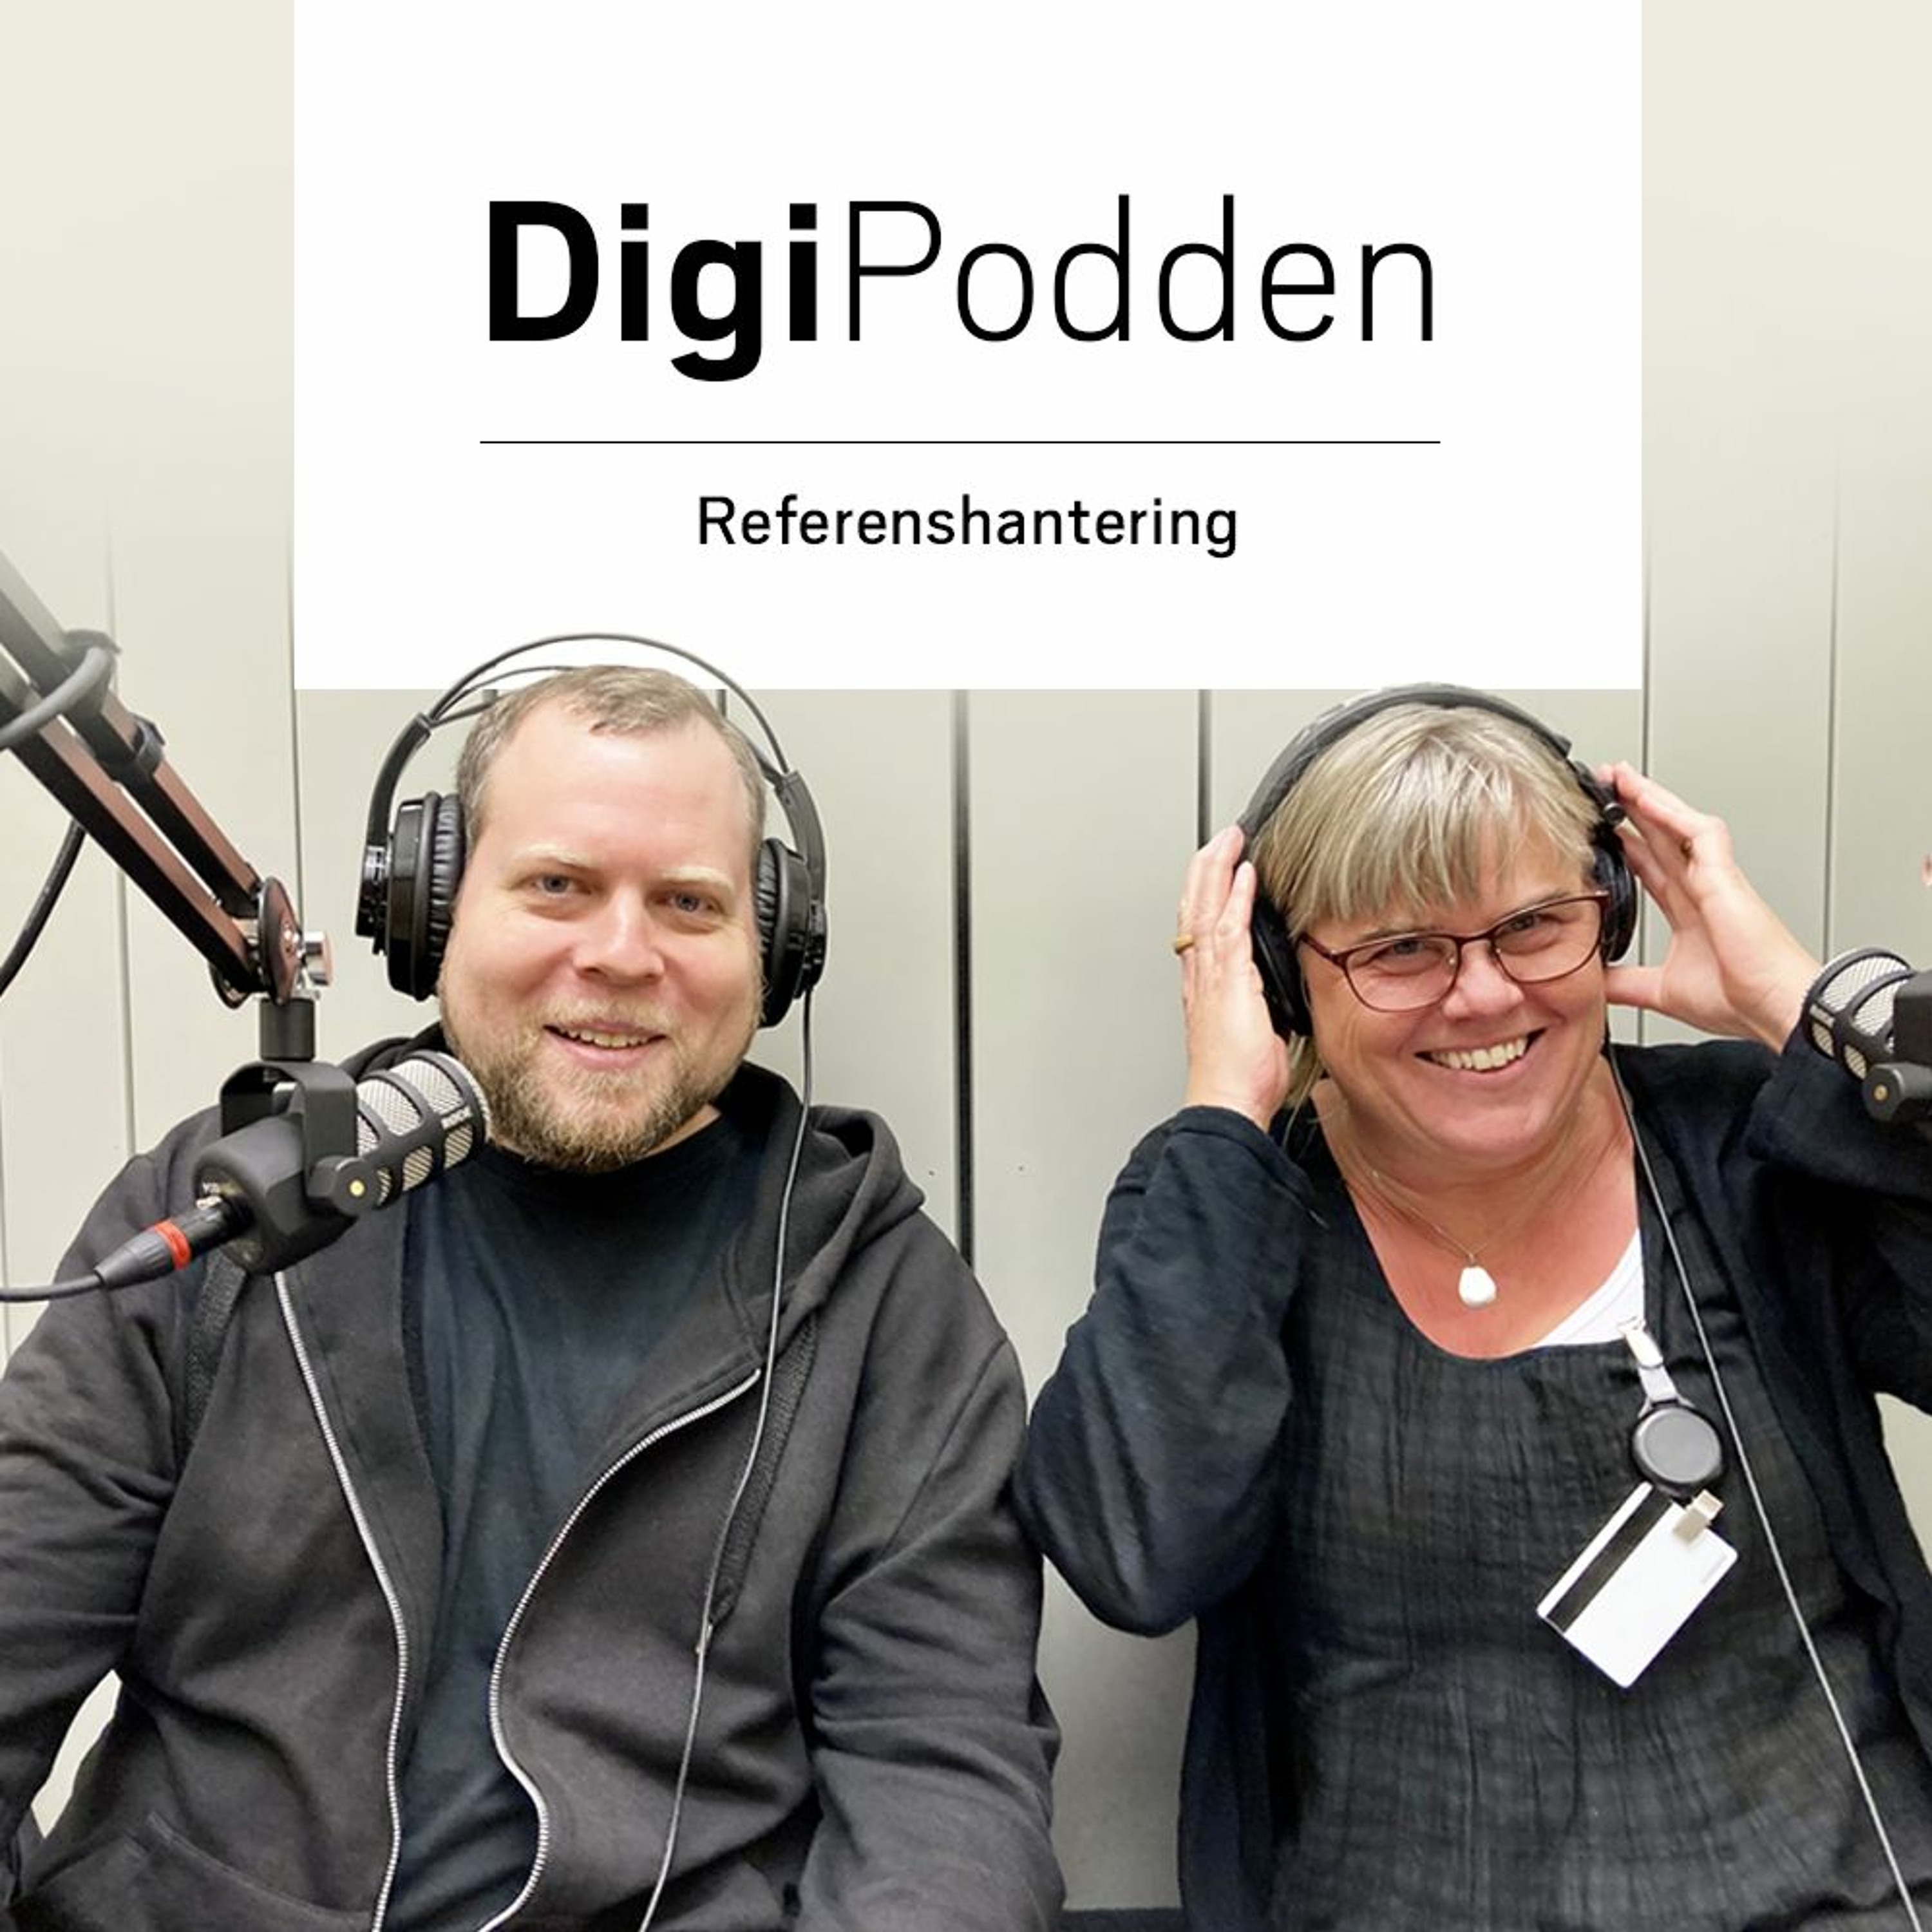 DigiPodden - Referenshantering med Fredrik och Jessica